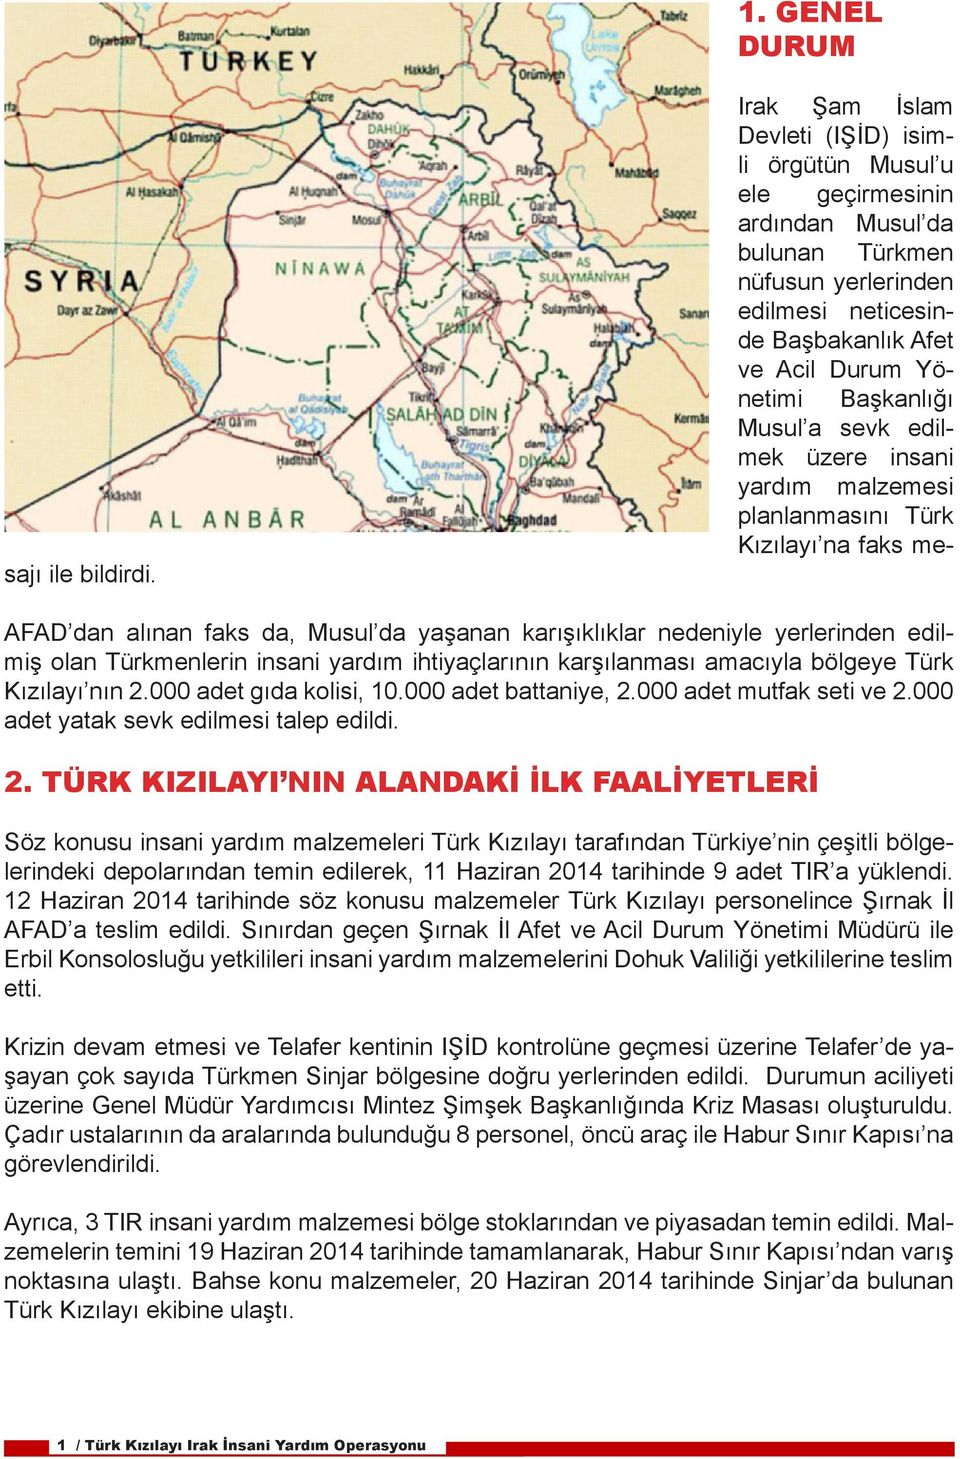 AFAD dan alınan faks da, Musul da yaşanan karışıklıklar nedeniyle yerlerinden edilmiş olan Türkmenlerin insani yardım ihtiyaçlarının karşılanması amacıyla bölgeye Türk Kızılayı nın 2.